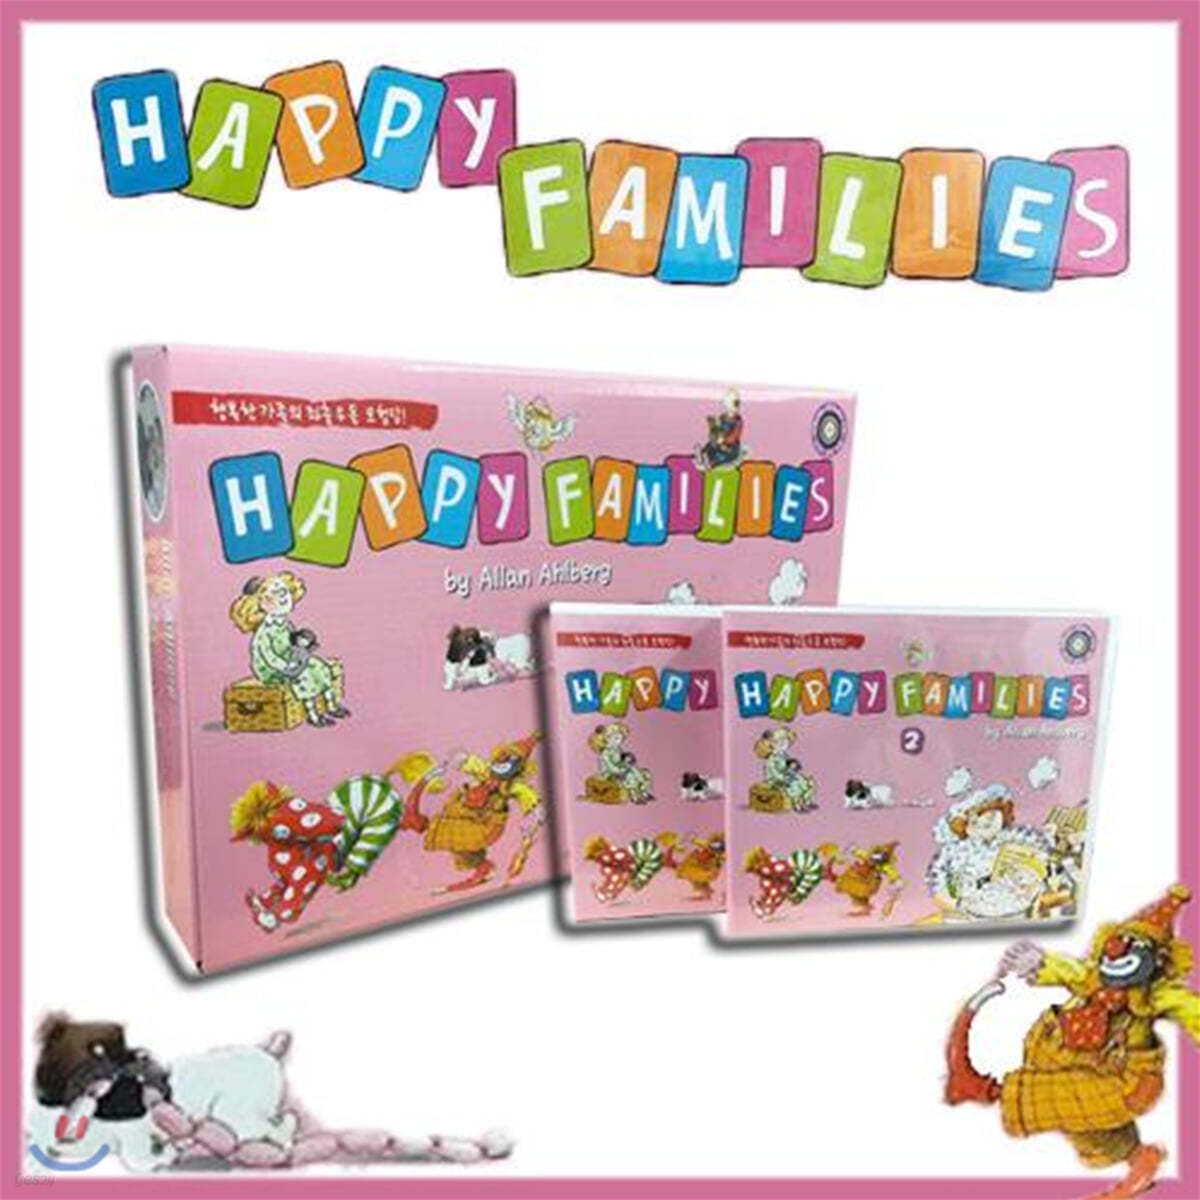 해피 패밀리 20종 세트 :  Happy Families 20종 Package (사은품 20종 CD)